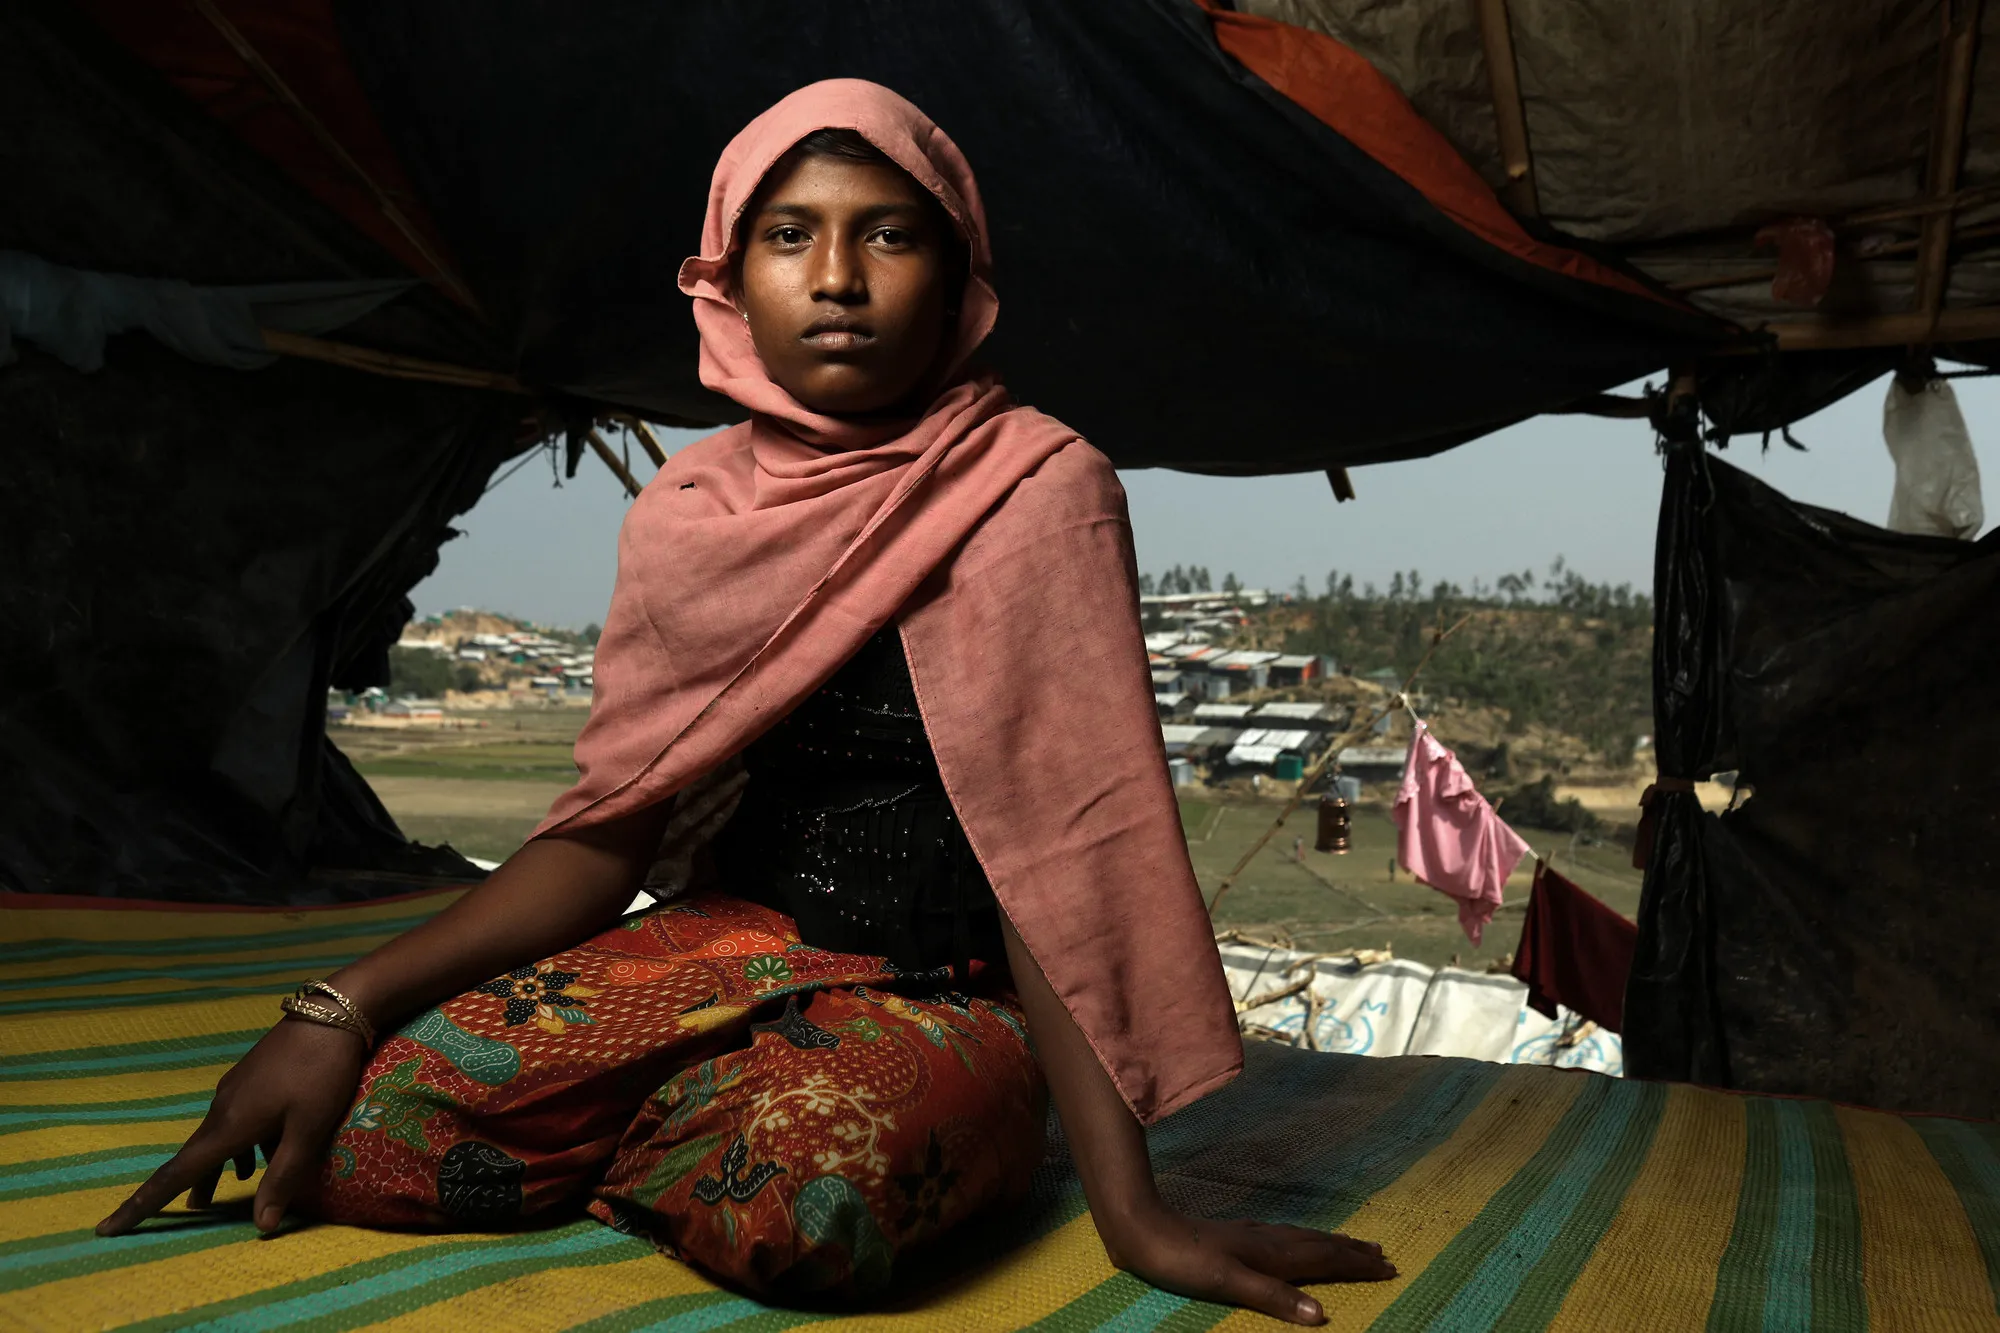 Une jeune fille vivant dans un camp de réfugiés bangladais. Photo: Josh Estey / CARE